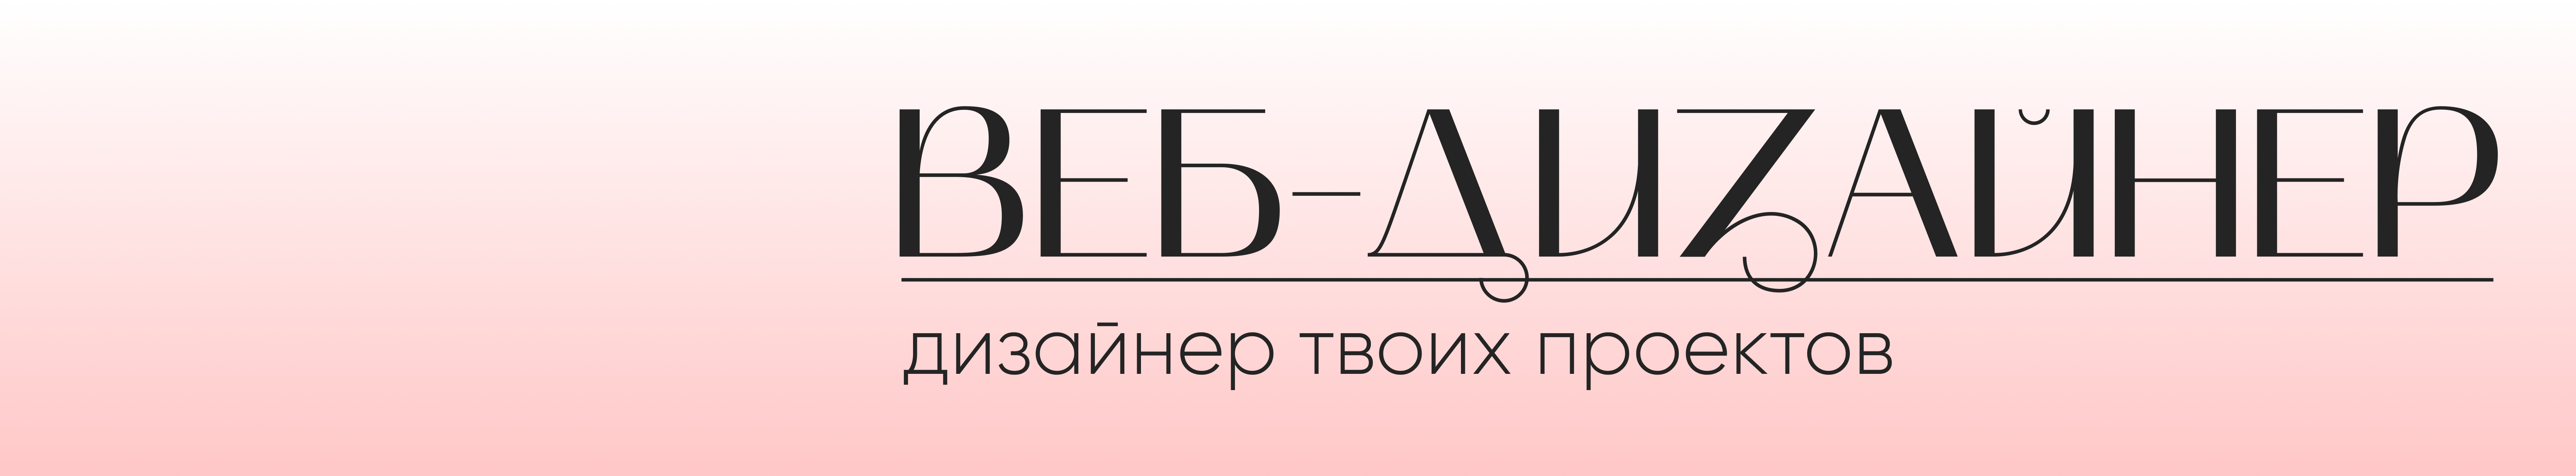 Banner de perfil de Екатерина Якимова